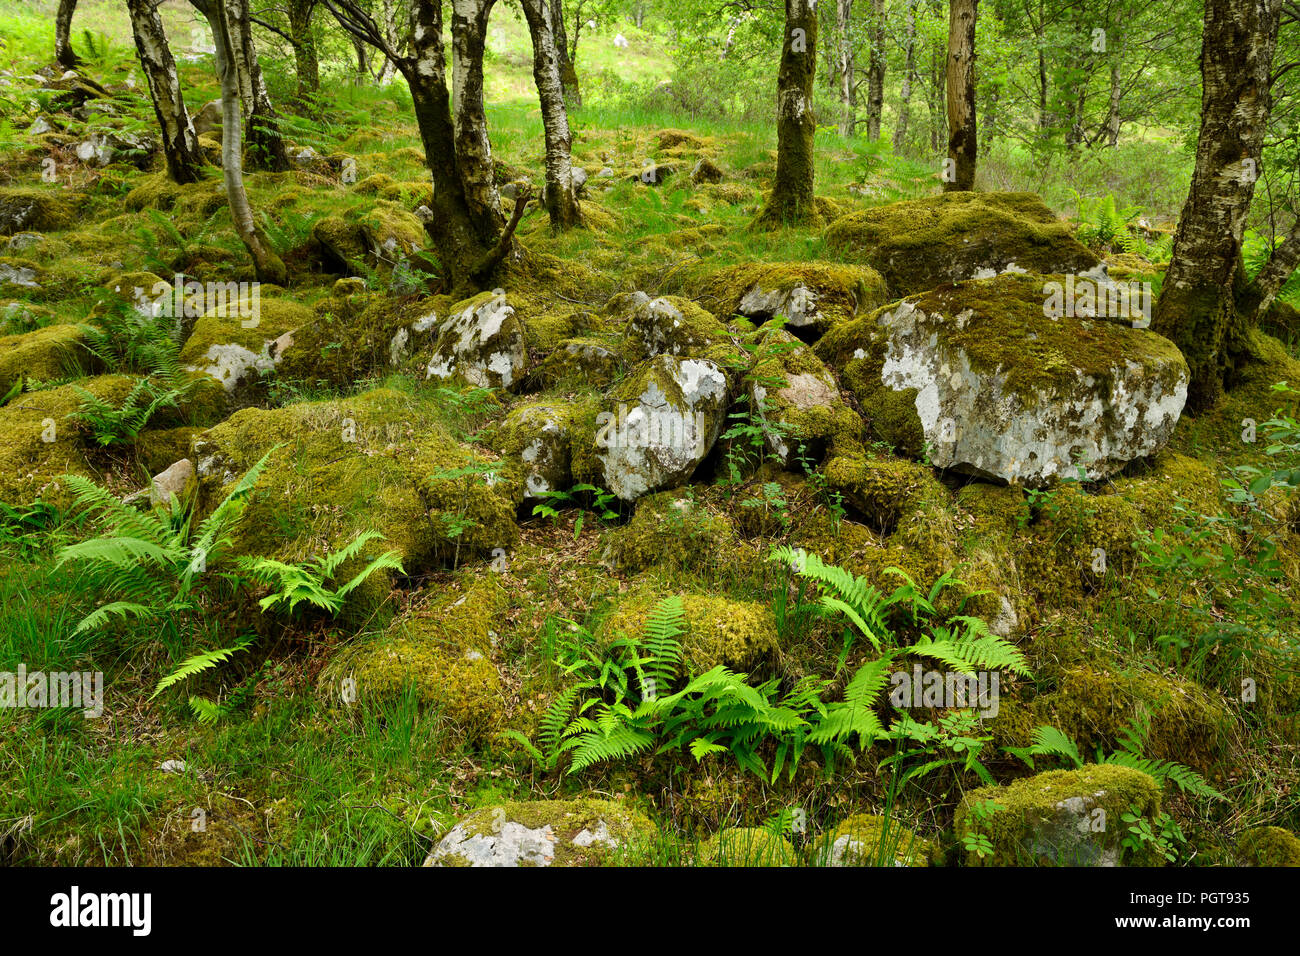 Moss rocce coperte in betulla foresta ai piedi del Ben Nevis montagna a gola Steall Highlands scozzesi Scotland Regno Unito Foto Stock